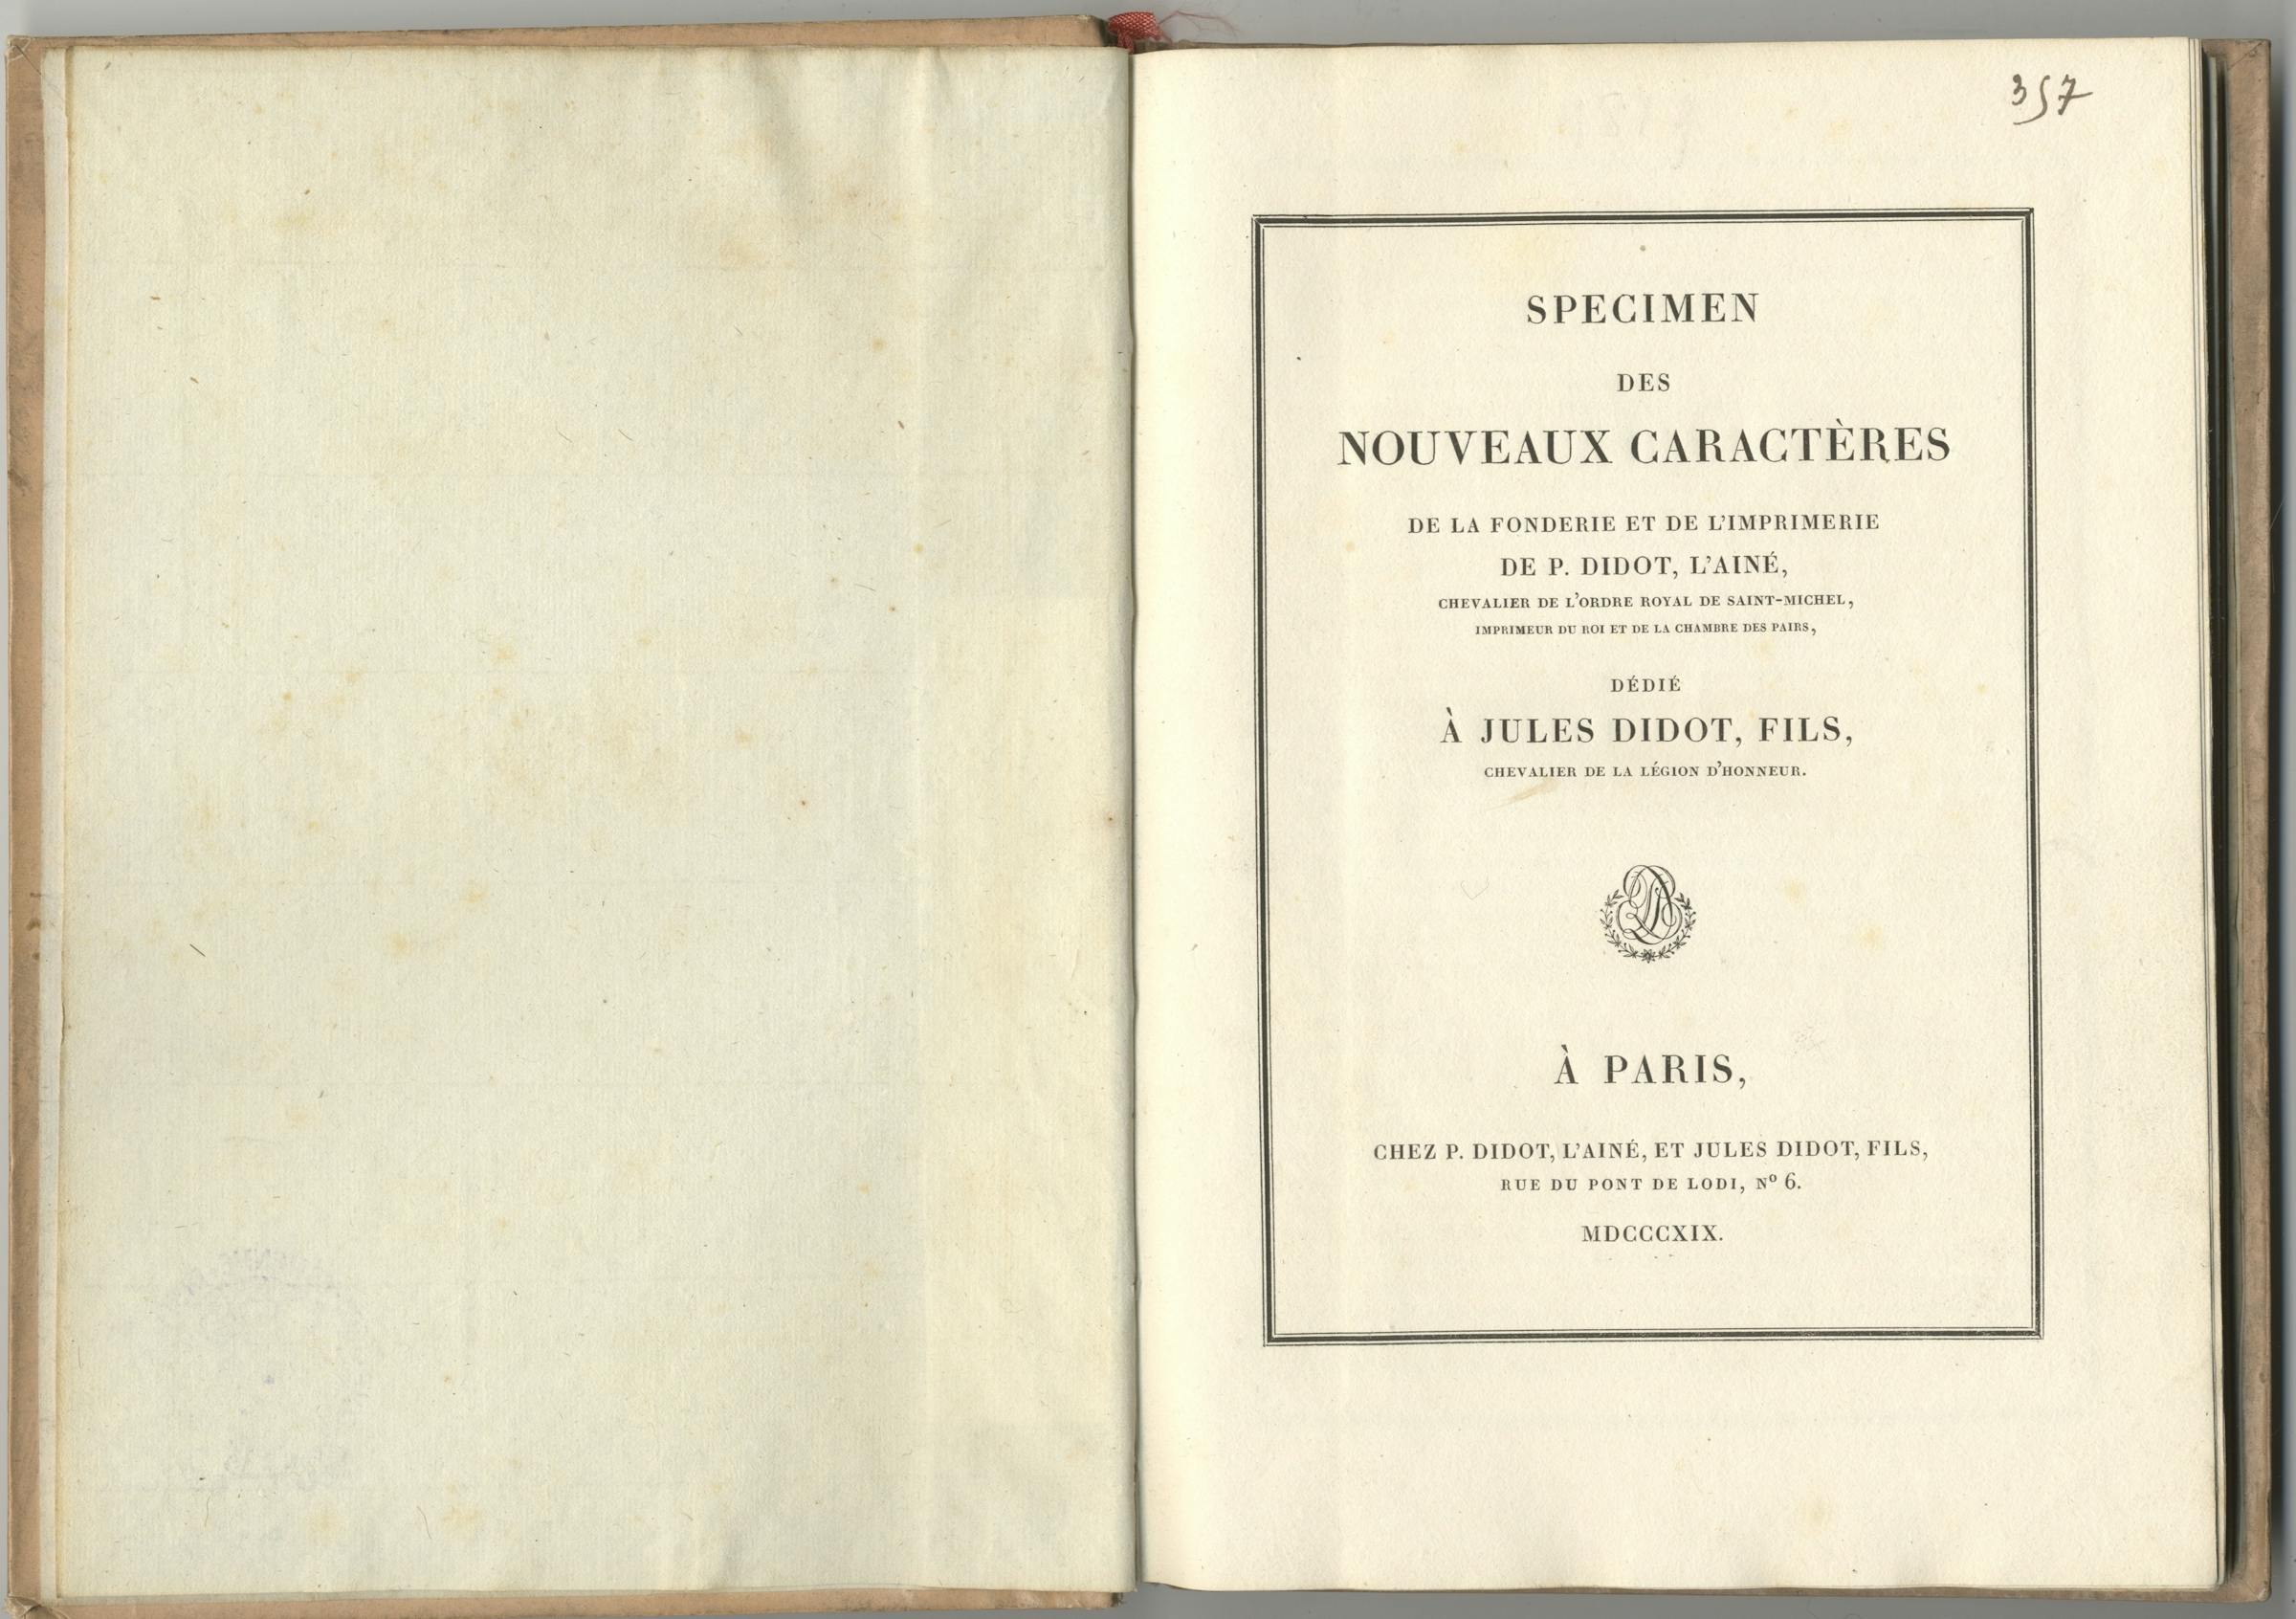 Specimen des nouveaux caractères de la fonderie et de l’imprimerie de P. Didot l’aîné, 1819